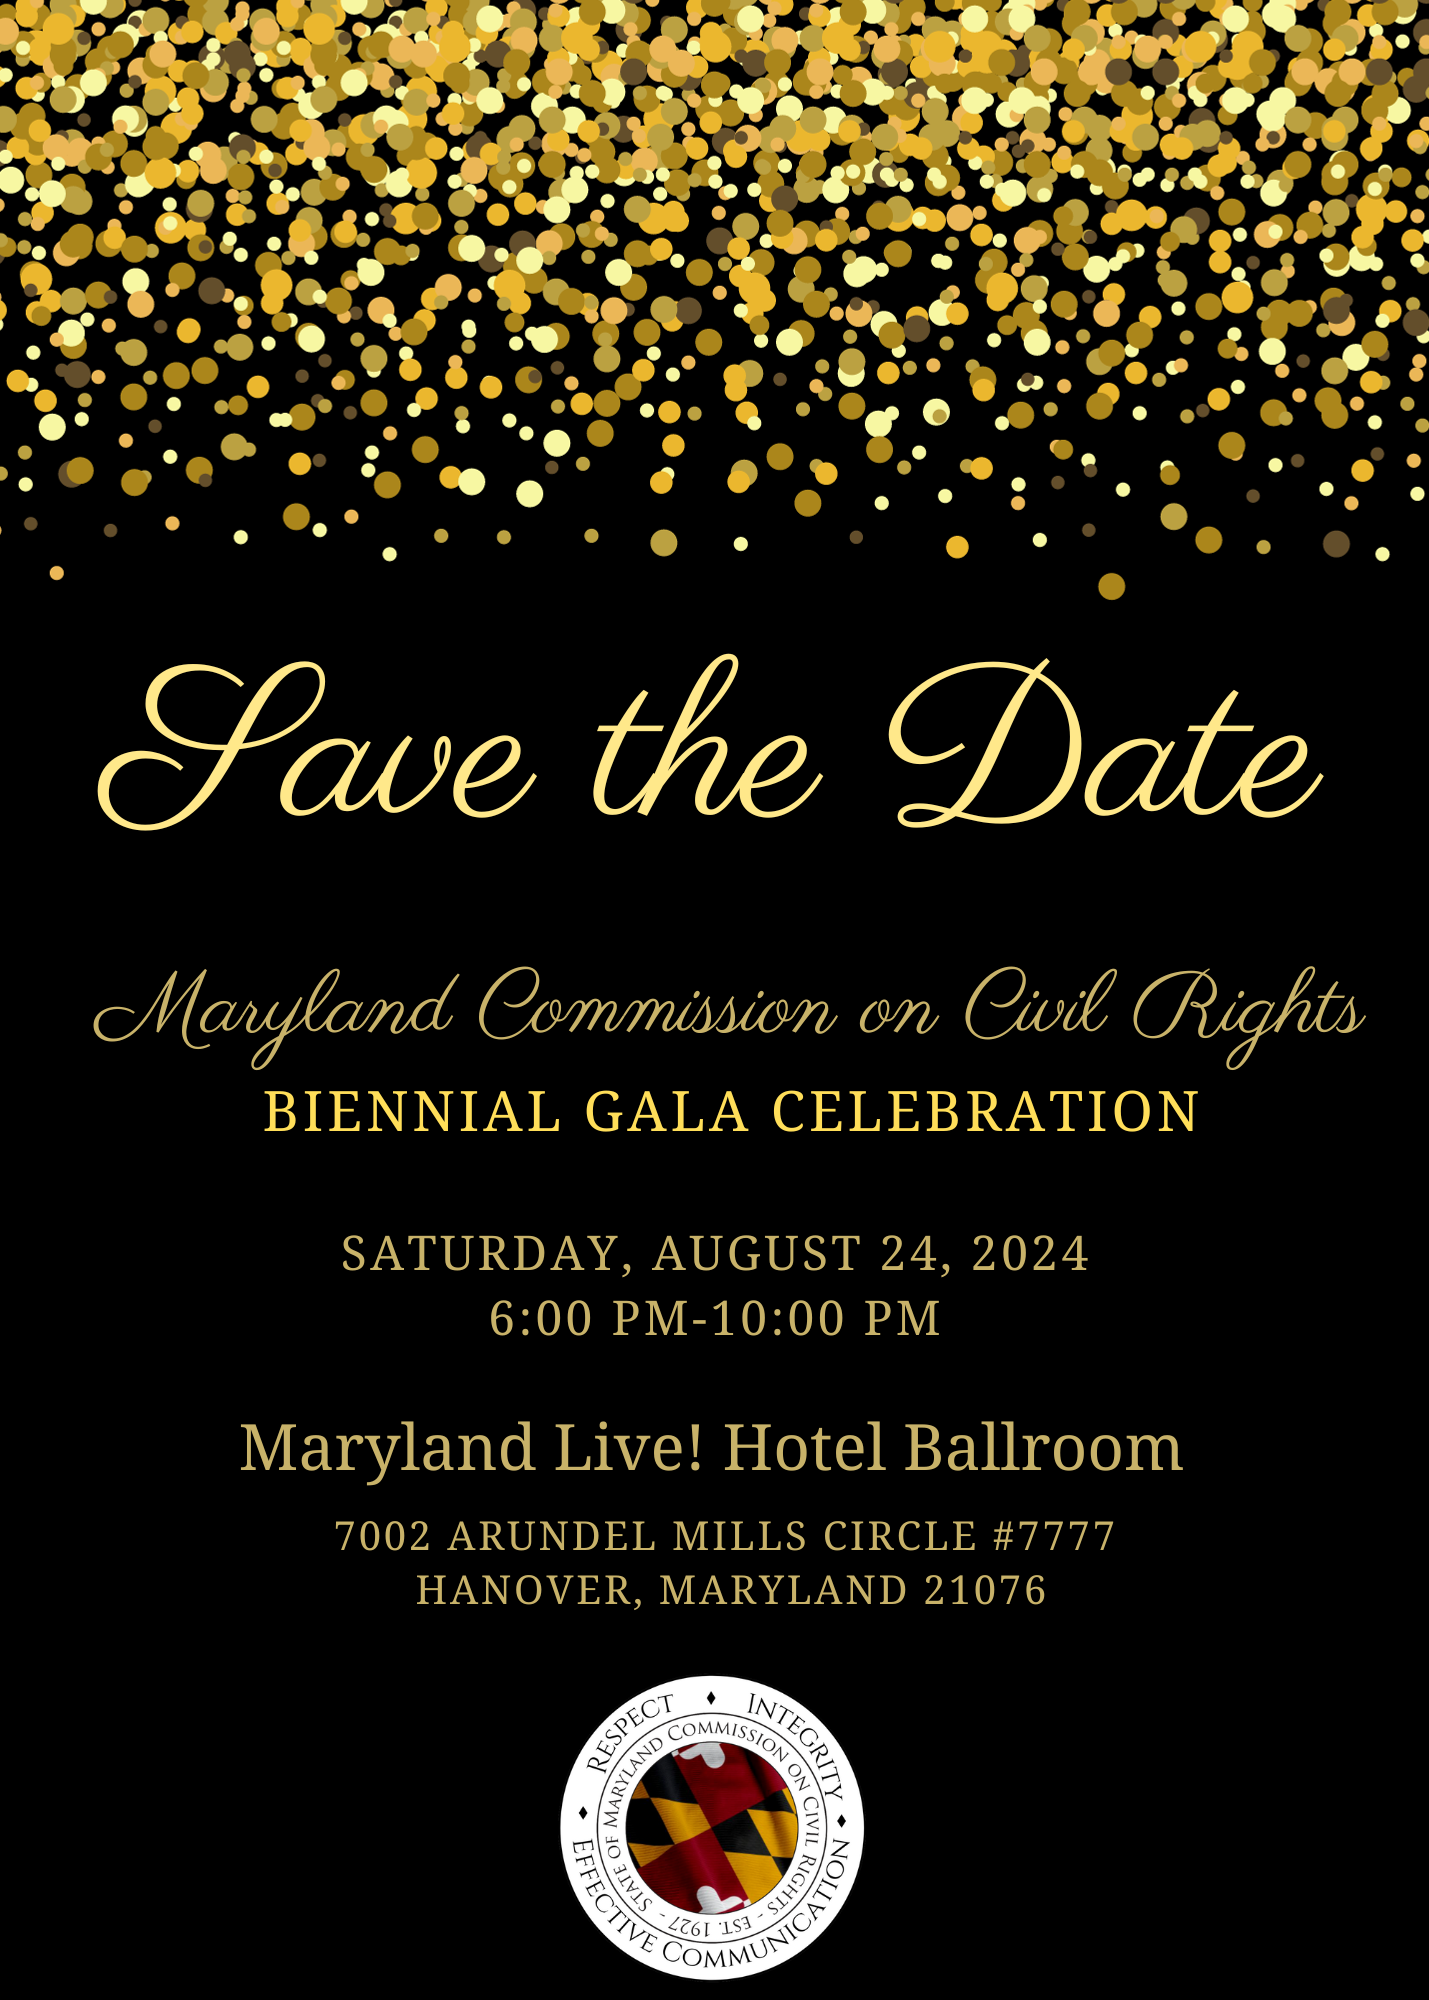 Mark Your Calendars -  MCCR's Biennial Civil Rights & Fair Housing Gala Celebration - August 24, 2024